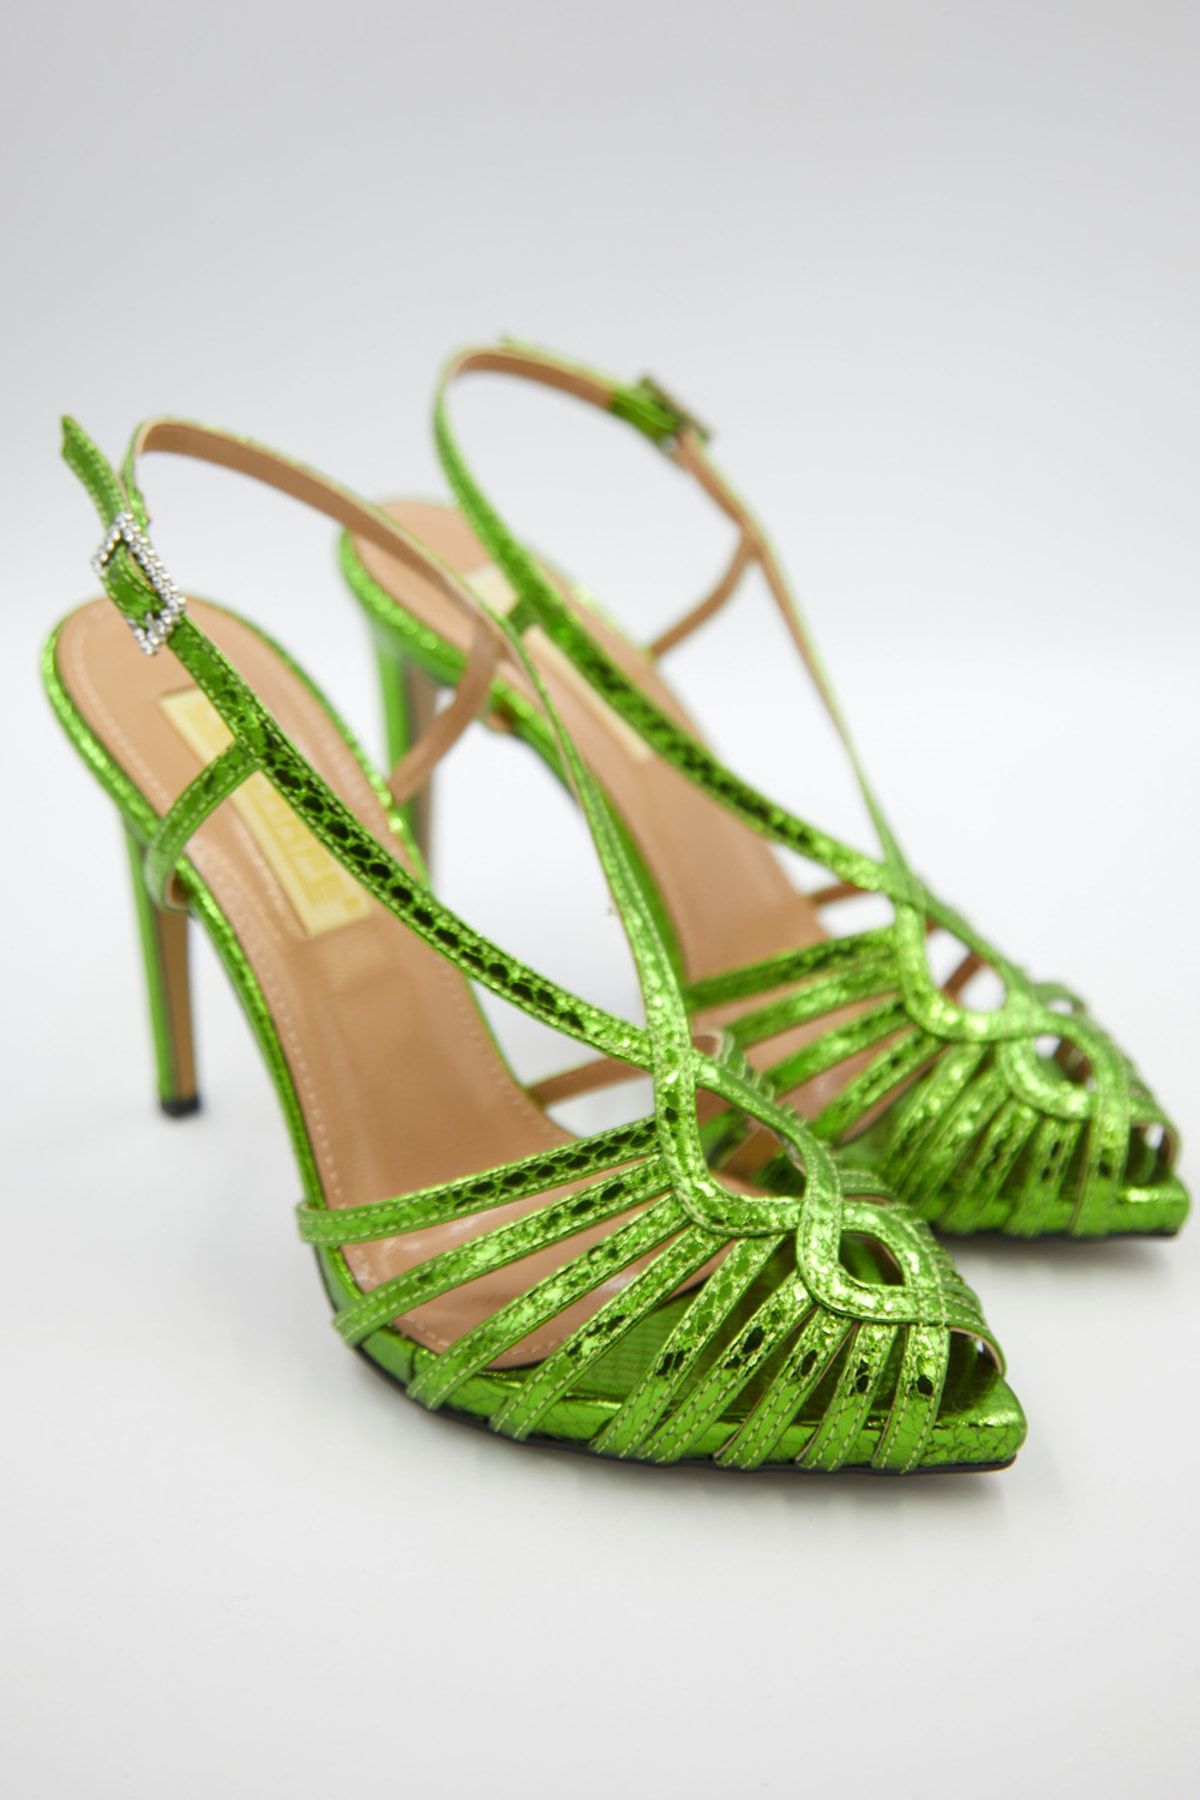 Green Snakeskin Shoes - Disco Elysium Wiki